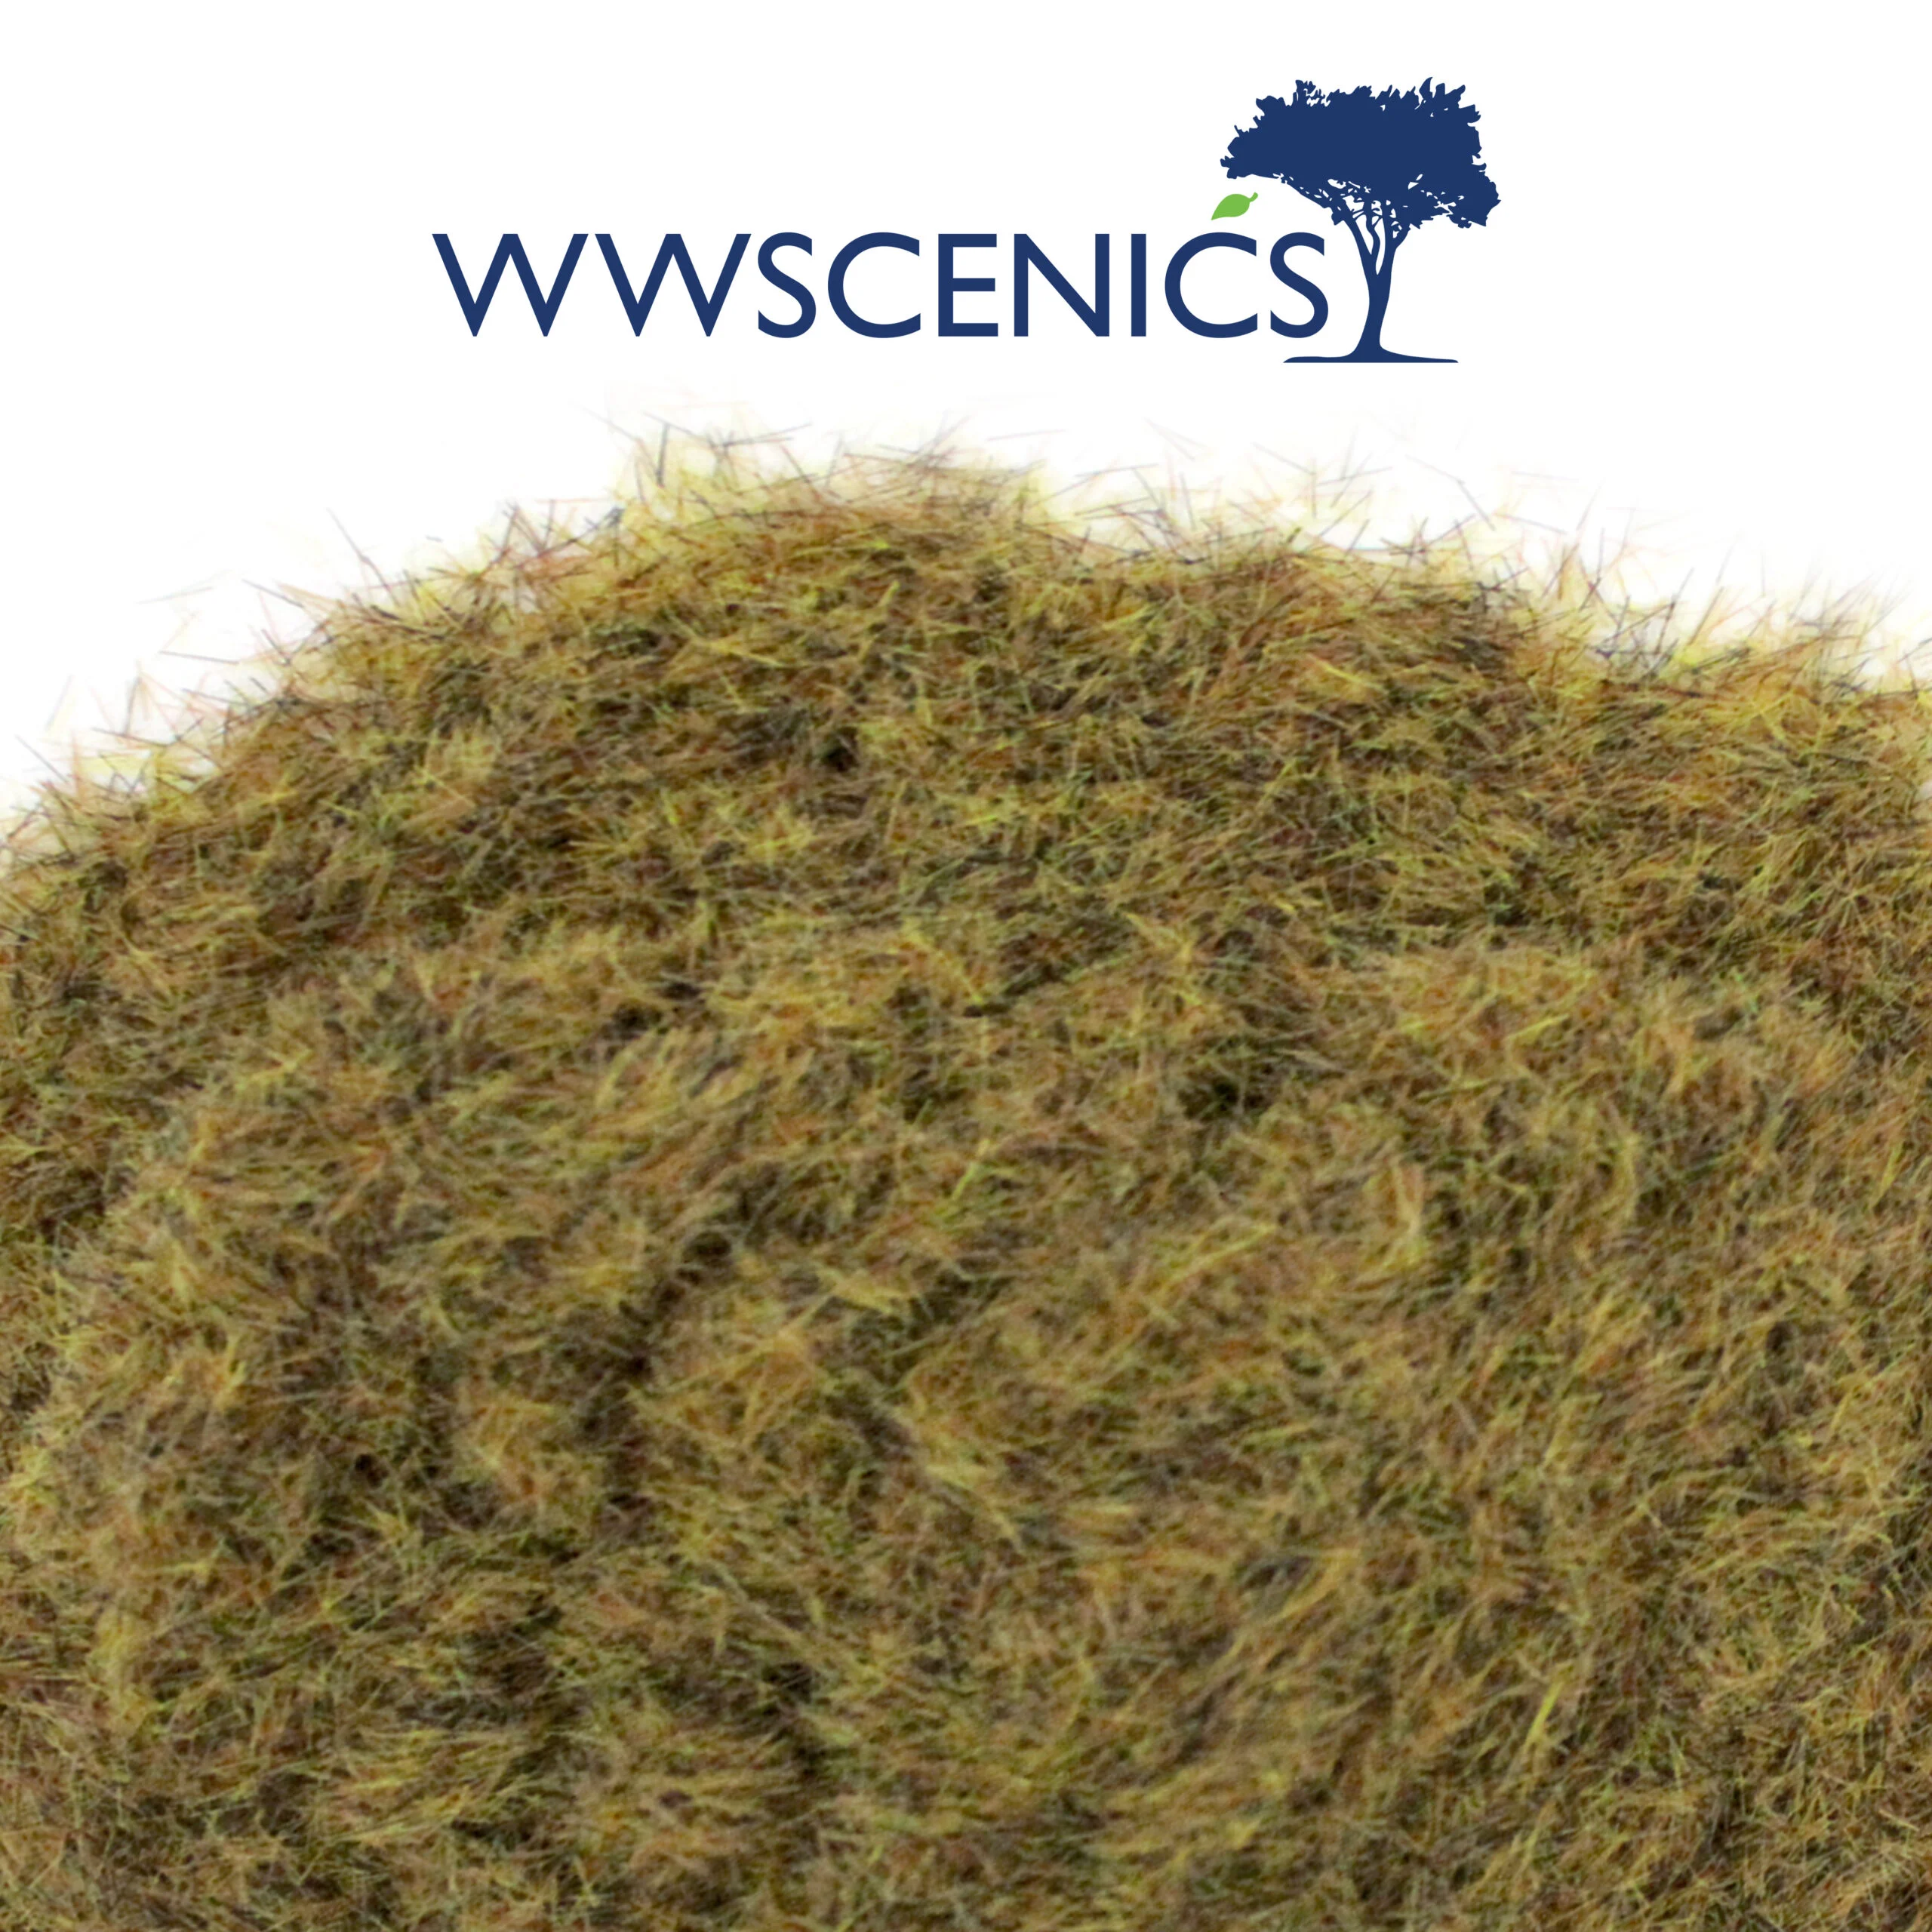 WWScenics Static Grass Strips x 10 | 10mm Swamp | GSTSWA4| for Model Scenery